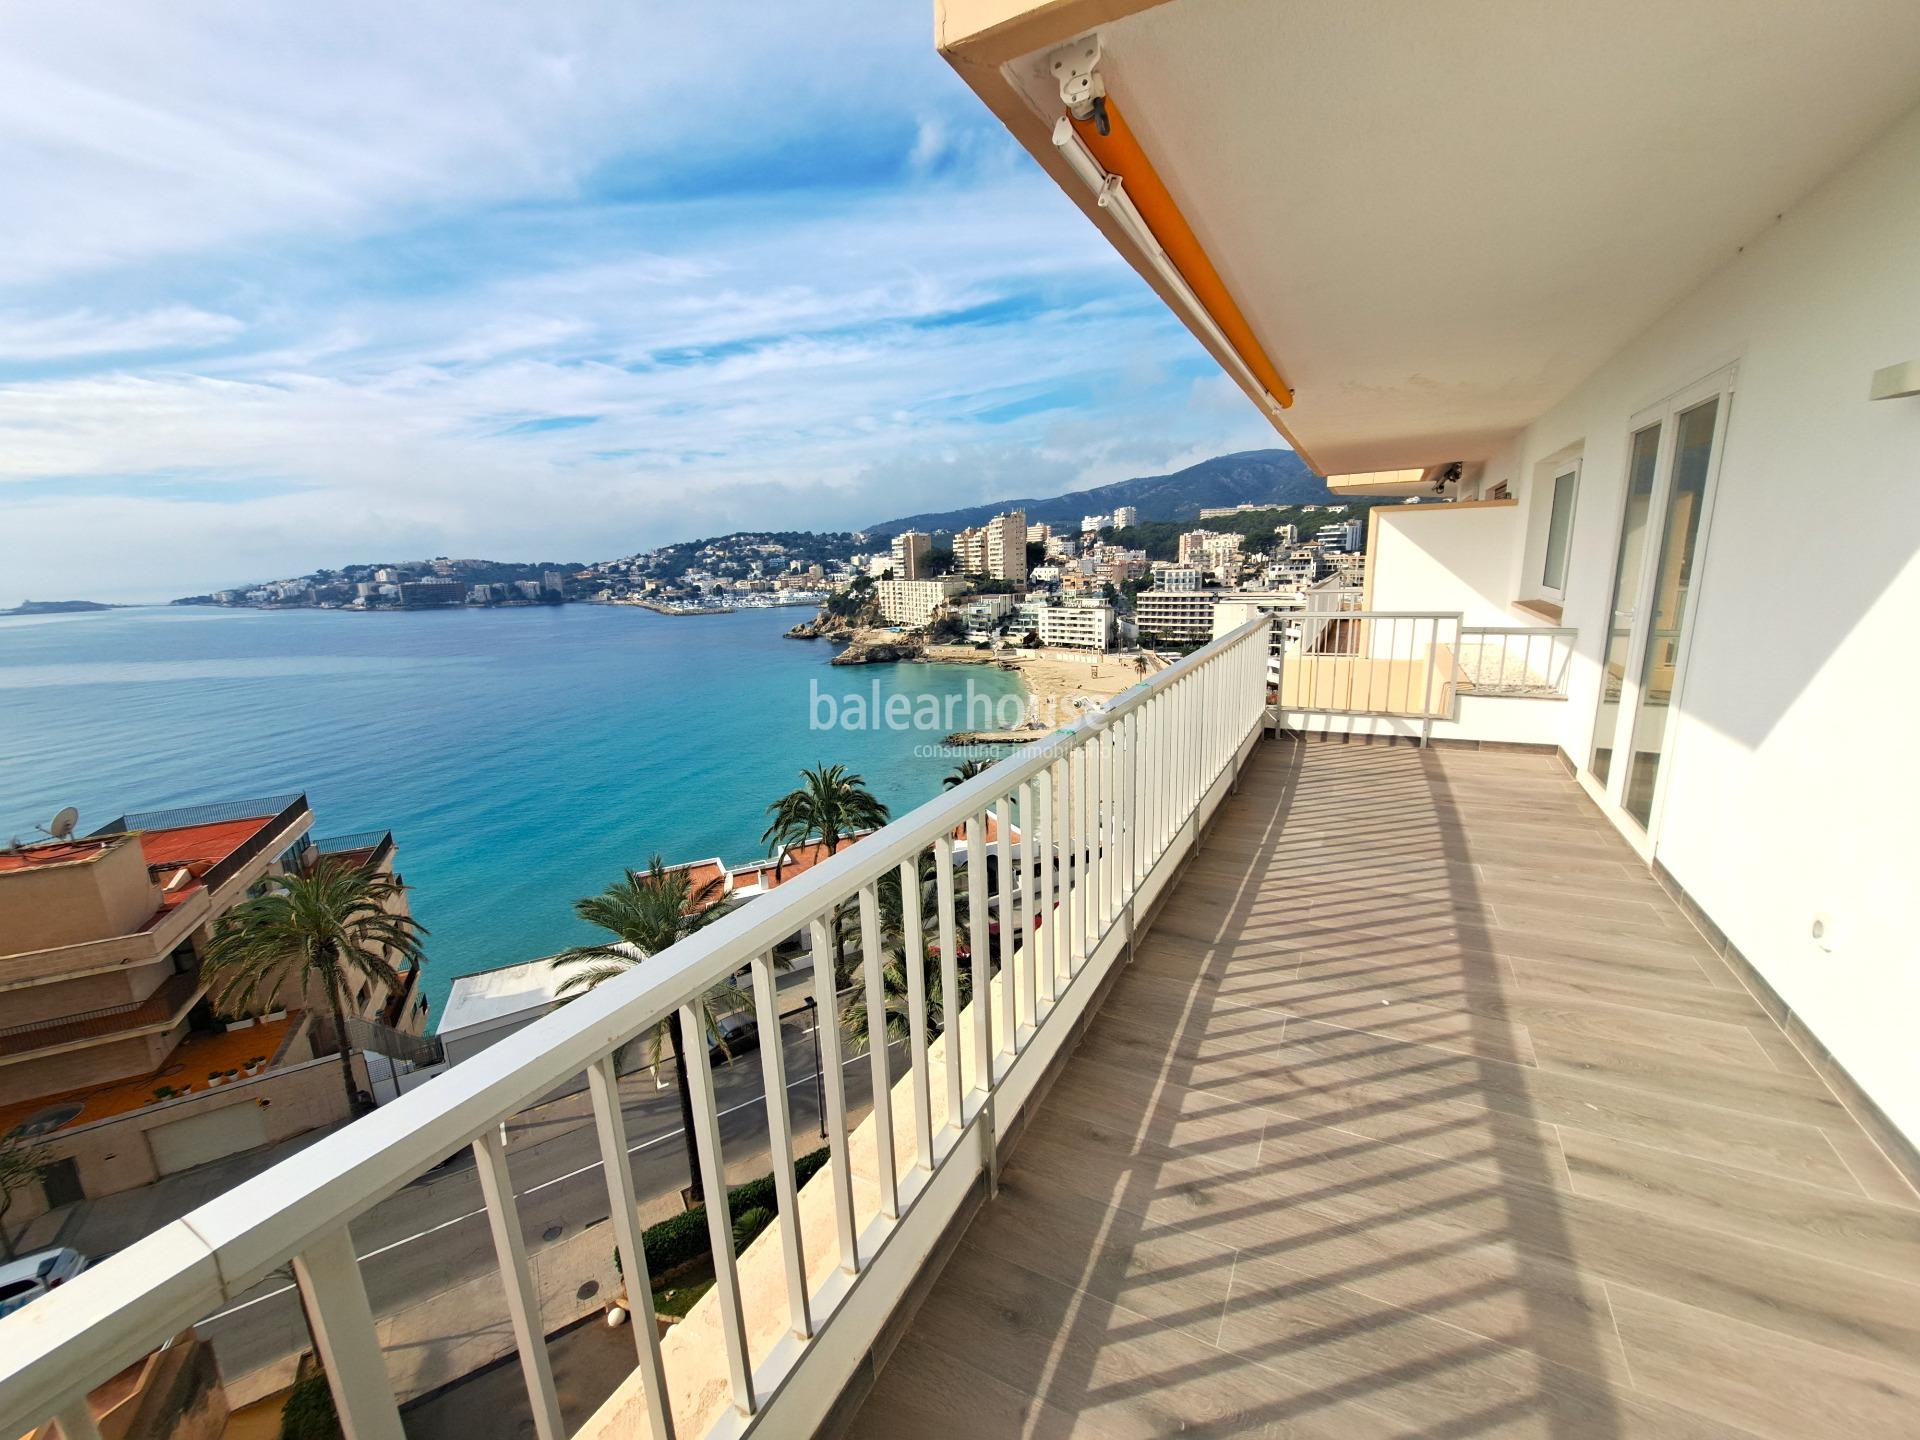 Apartamento reformado con amplia terraza y vistas espectaculares al mar a pocos pasos de la playa.